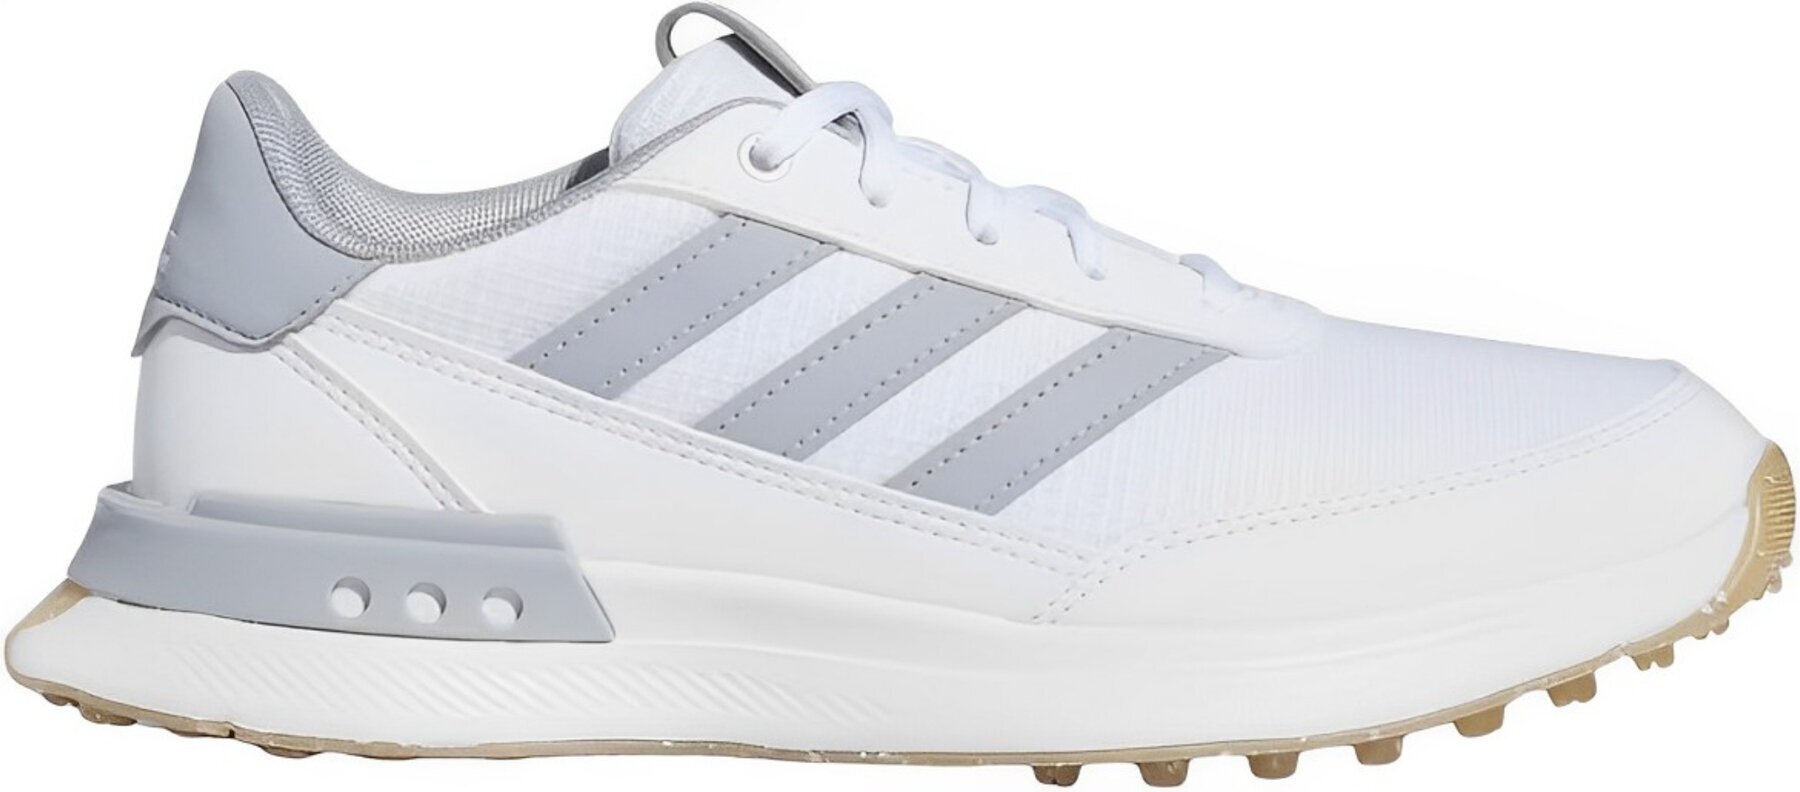 Calzado de golf junior Adidas S2G Spikeless 24 Junior Golf Shoes White/Halo Silver/Gum 38 Calzado de golf junior